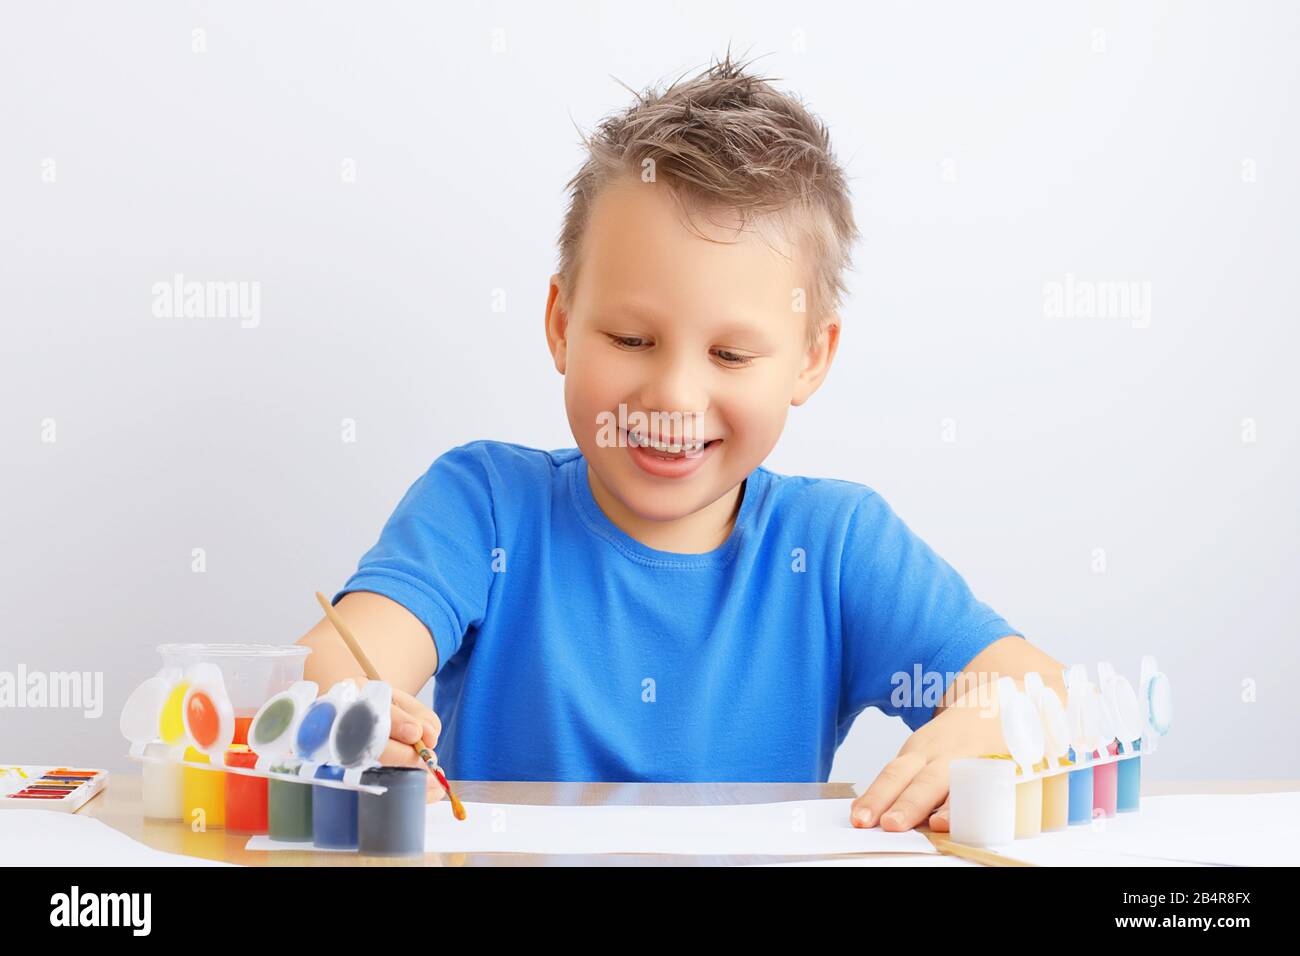 Ein fröhlicher lächelnder Junge mit unordentlichen Haaren hält einen Pinsel in der Hand und zieht mit farbigen Farben auf Papier. Kreativität, Bildung, Kunstkonzept. Stockfoto